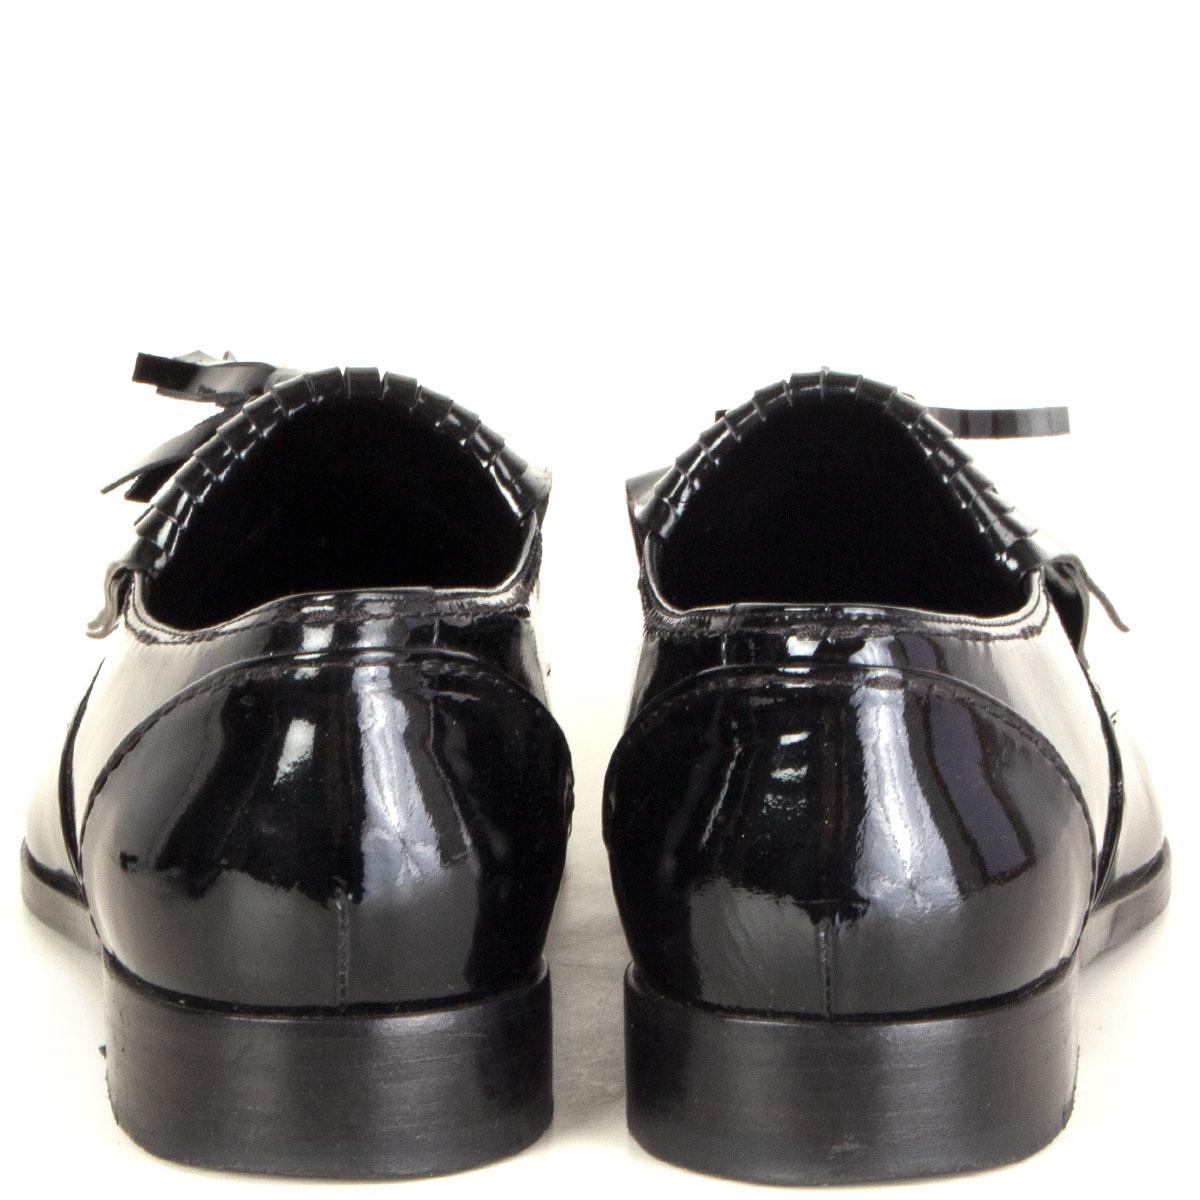 Black LANVIN black patent leather Tassel Loafer Flat Shoes 38